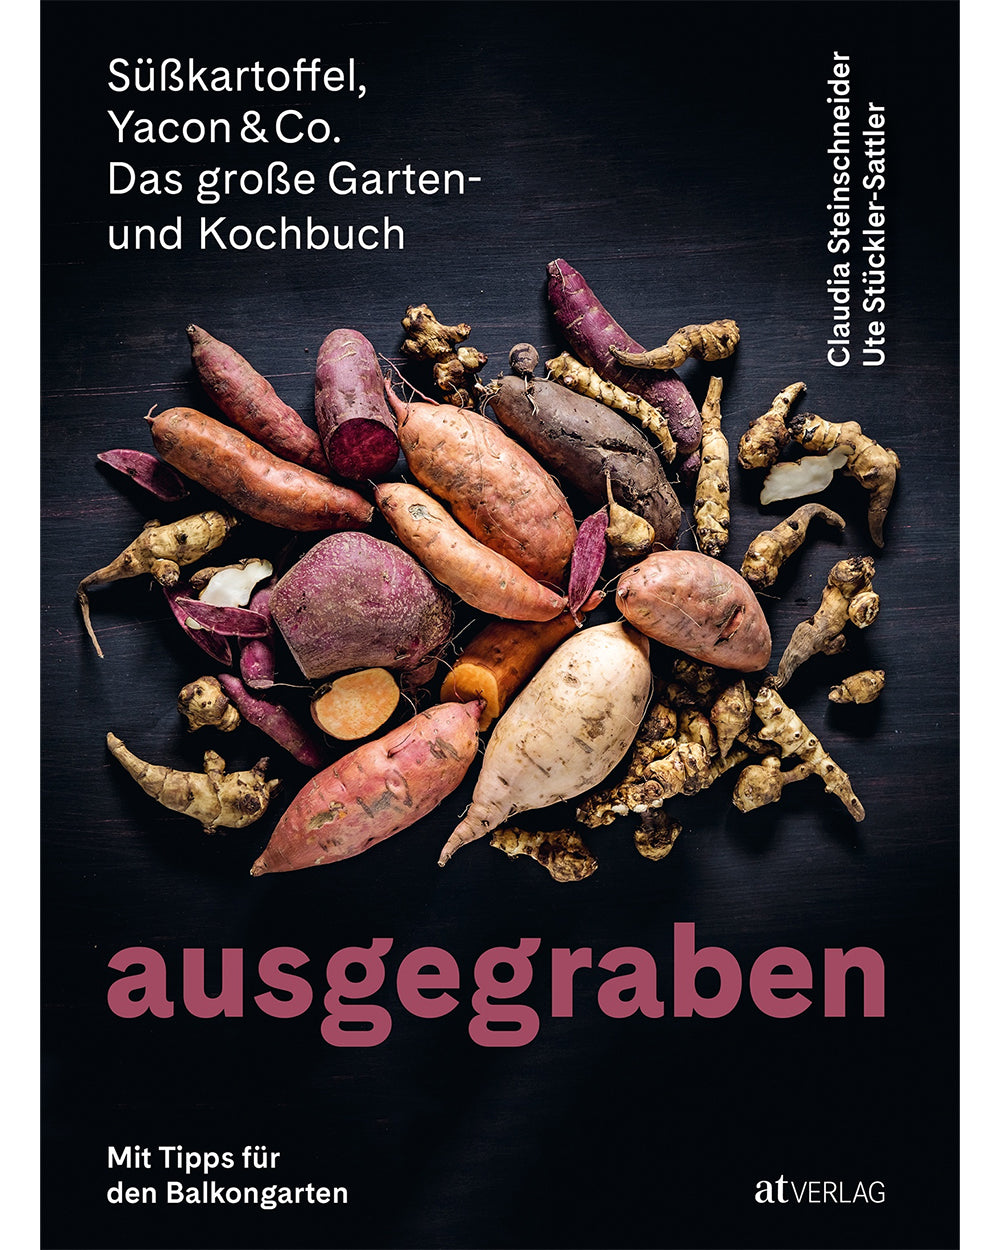 Ausgegraben - Süßkartoffel, Yacon & Co. - Das große Garten- und Kochbuch